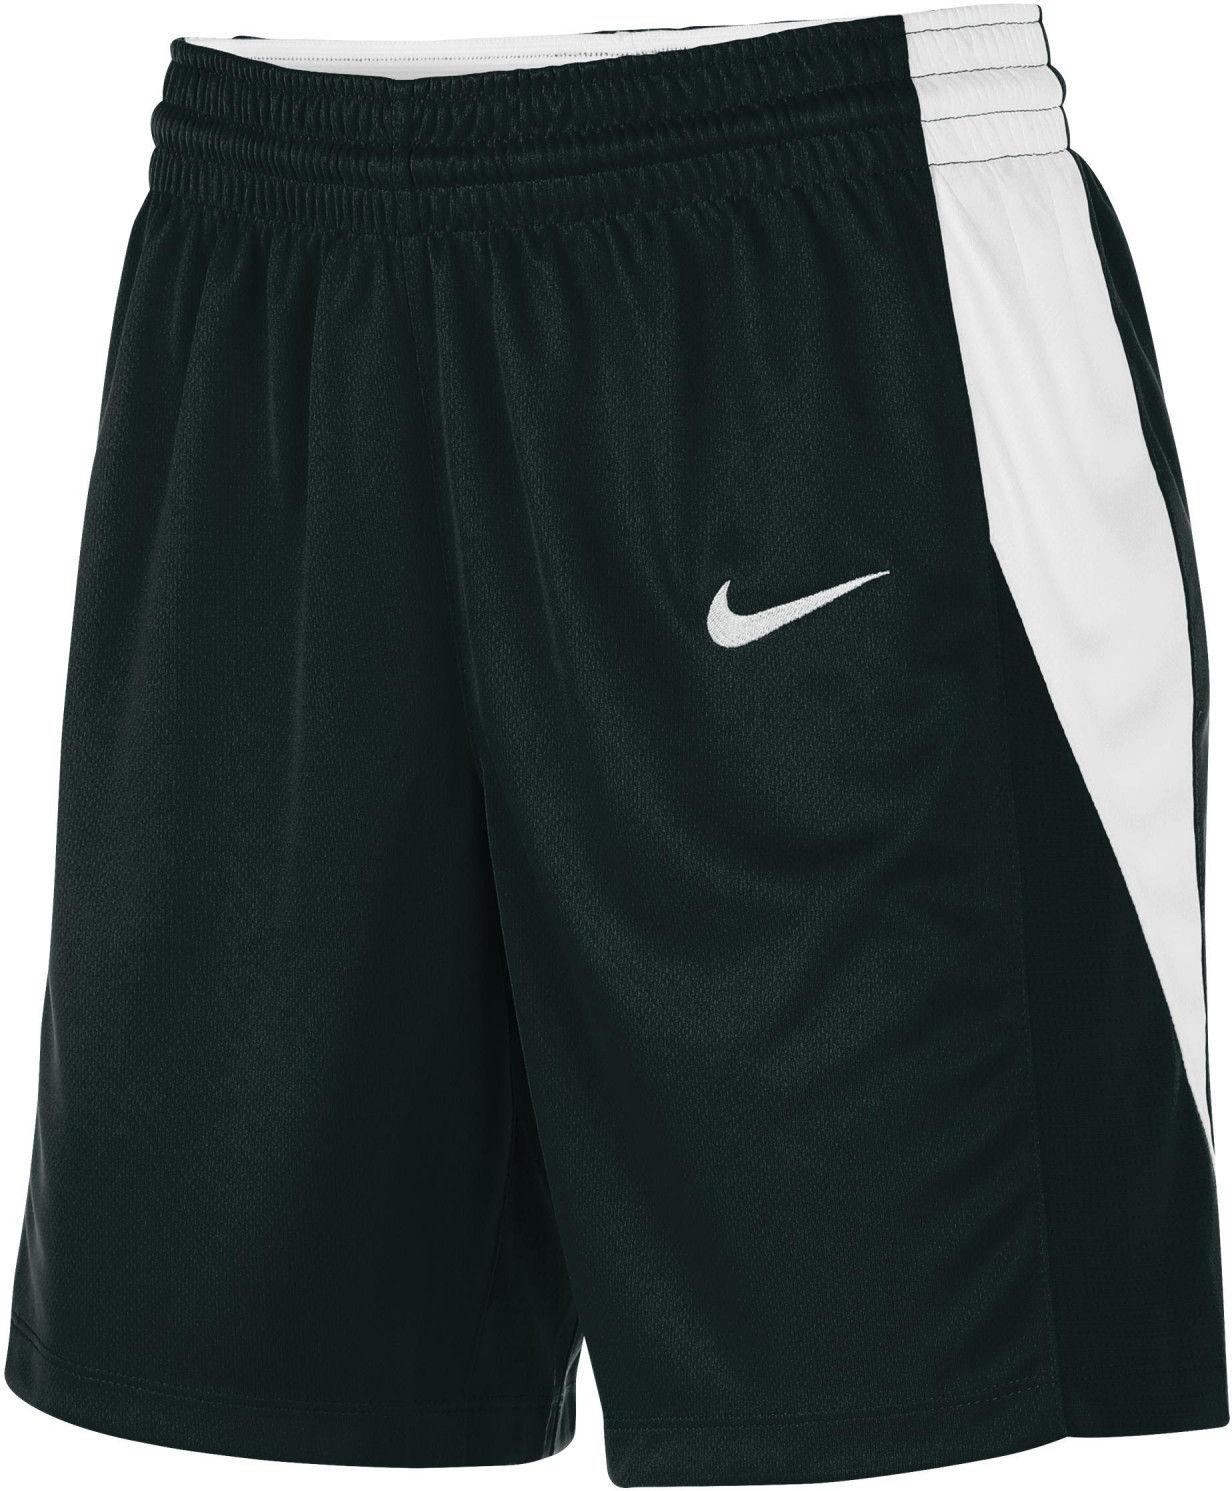 Dámské basketbalové šortky Nike Team